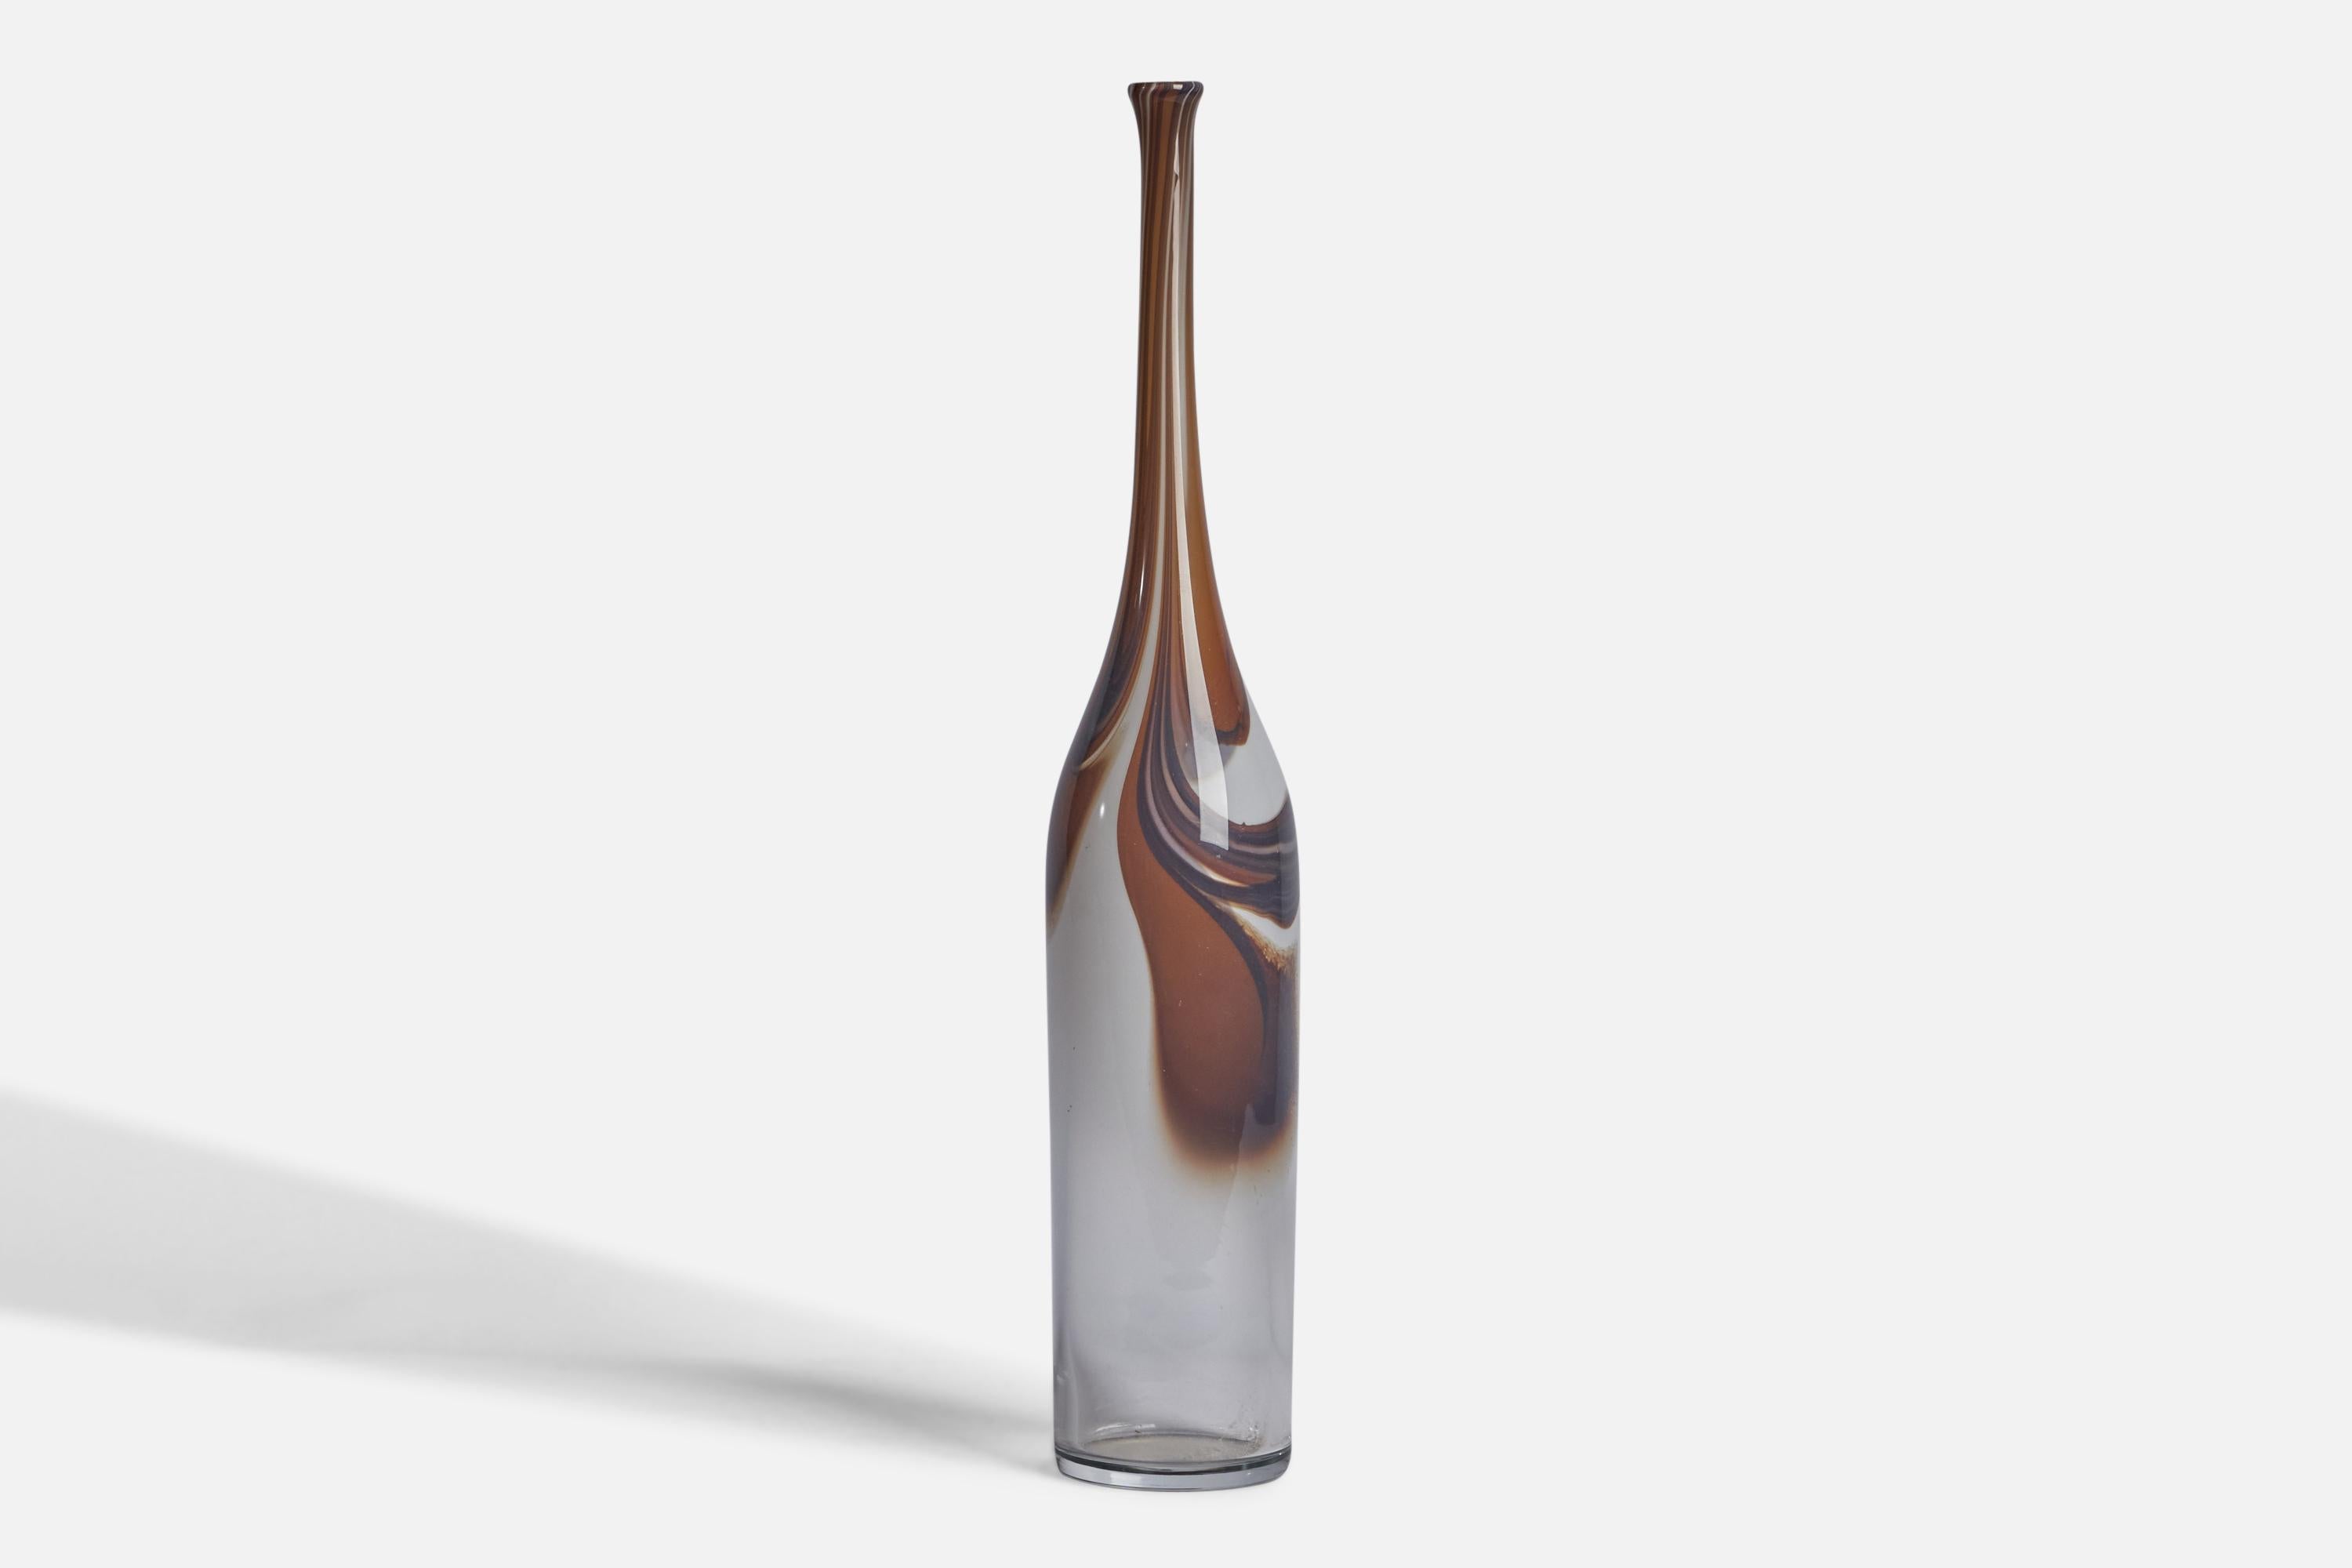 Vase en verre soufflé de couleur brune et noire, conçu par Bengt Orup et produit par Johansfors Glasbruk, Suède, c.C. 1960.